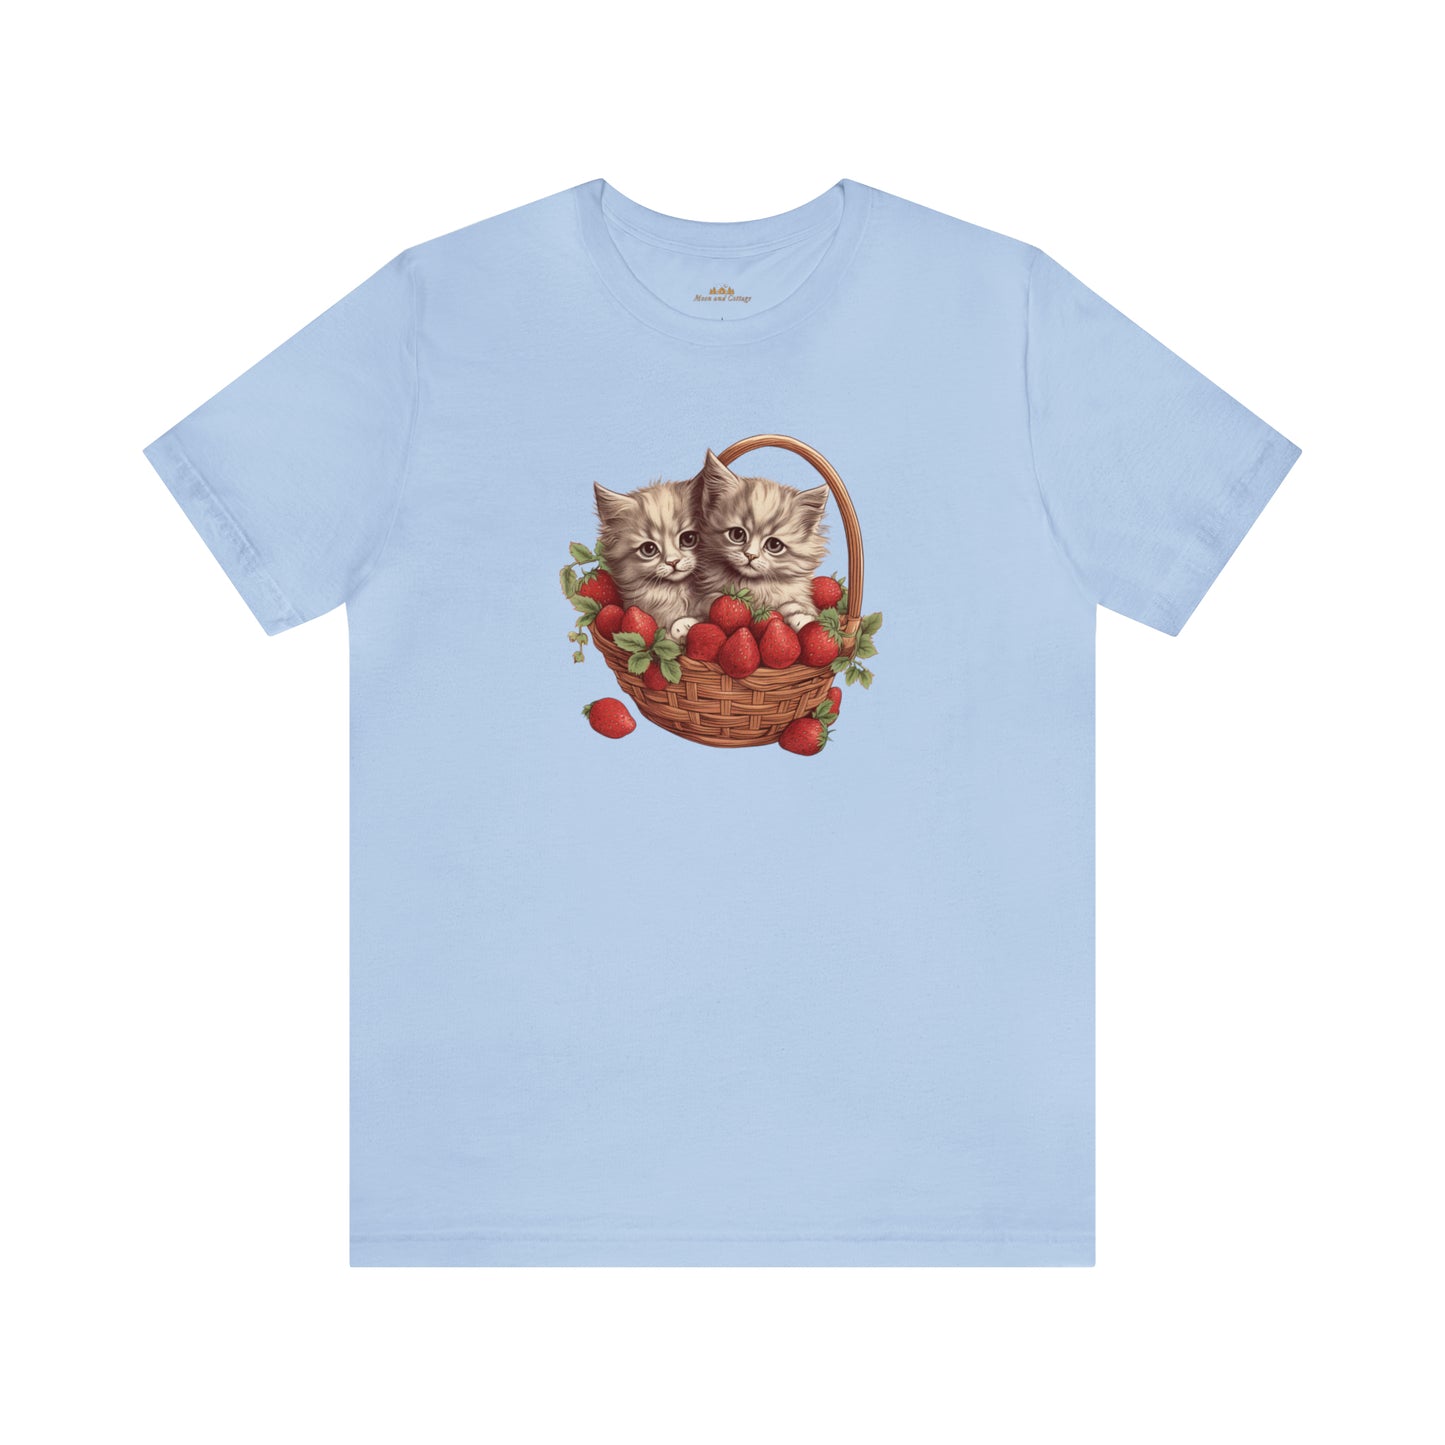 Cottagecore Clothing, Kittens 90's Vintage Boho Crew Neck T-Shirt, Strawberrycore